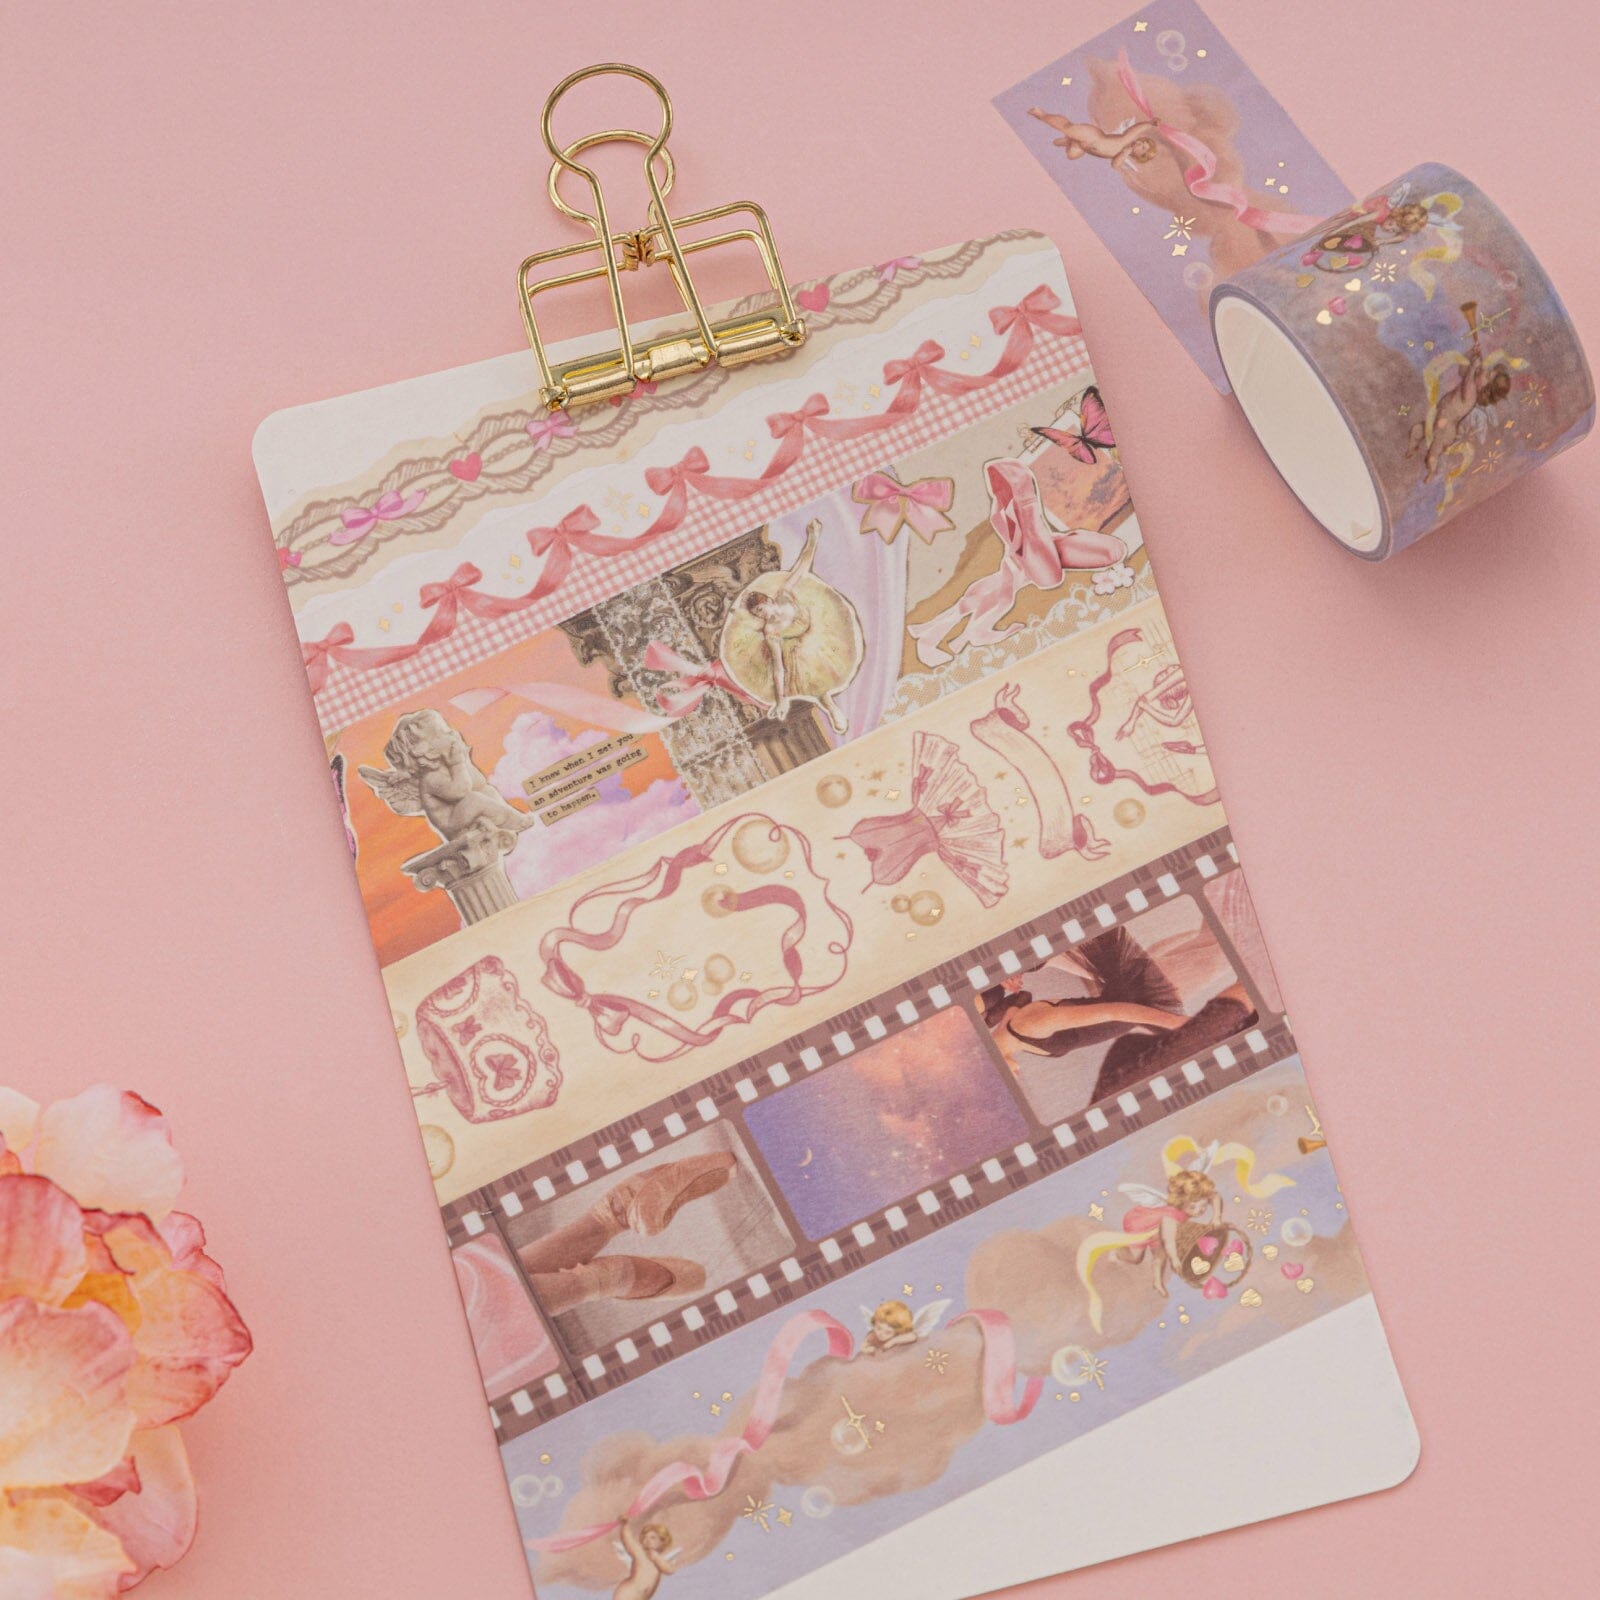  NatSumeBasics Pink Washi Tape Set Self-Adhesive